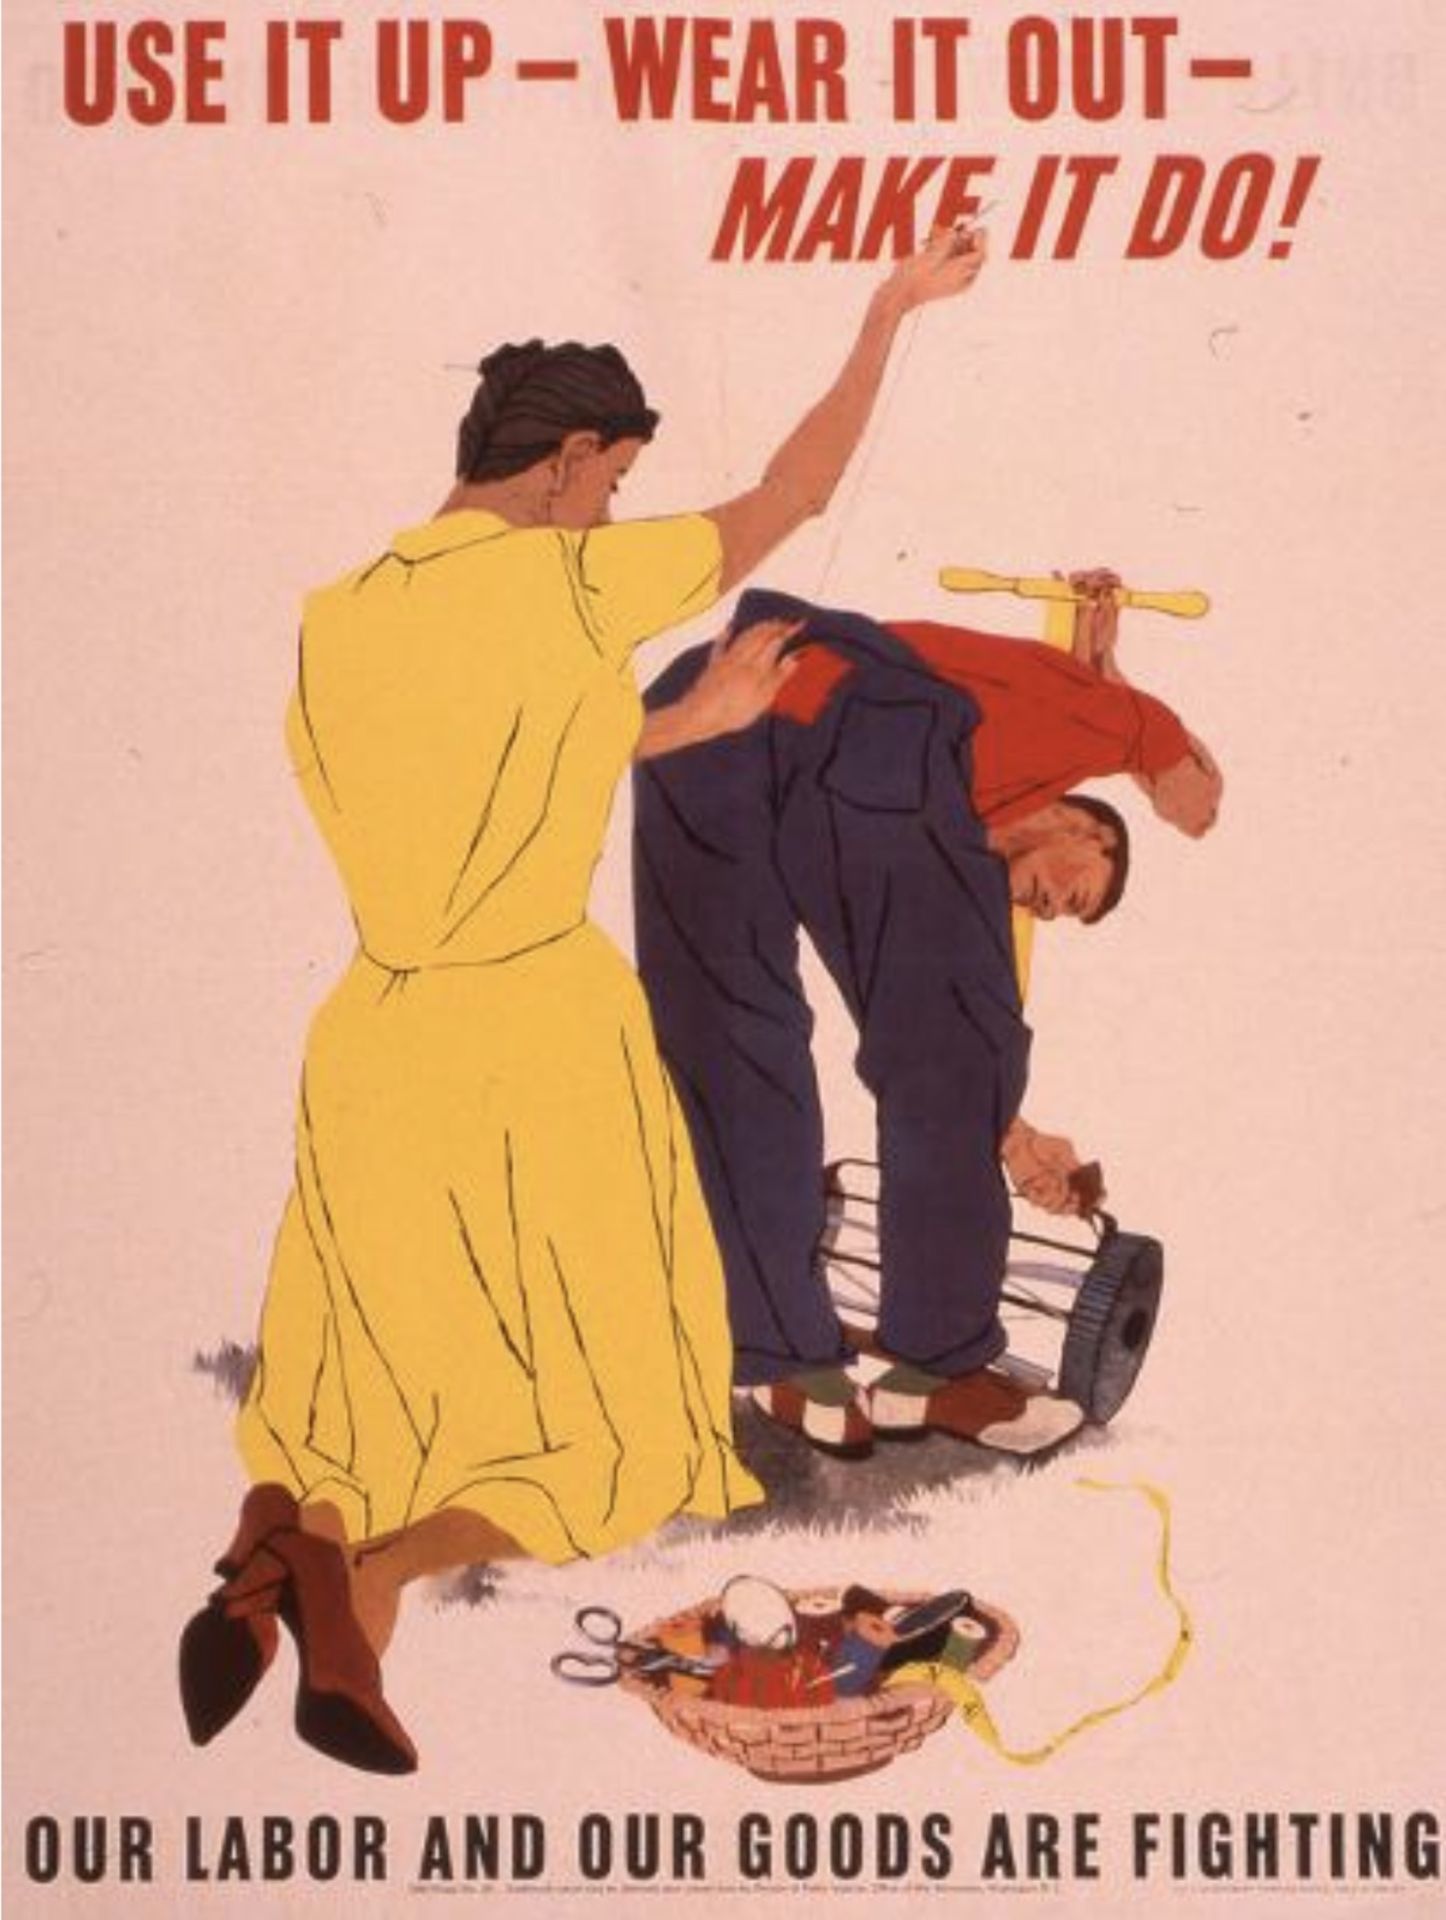 World War II Poster